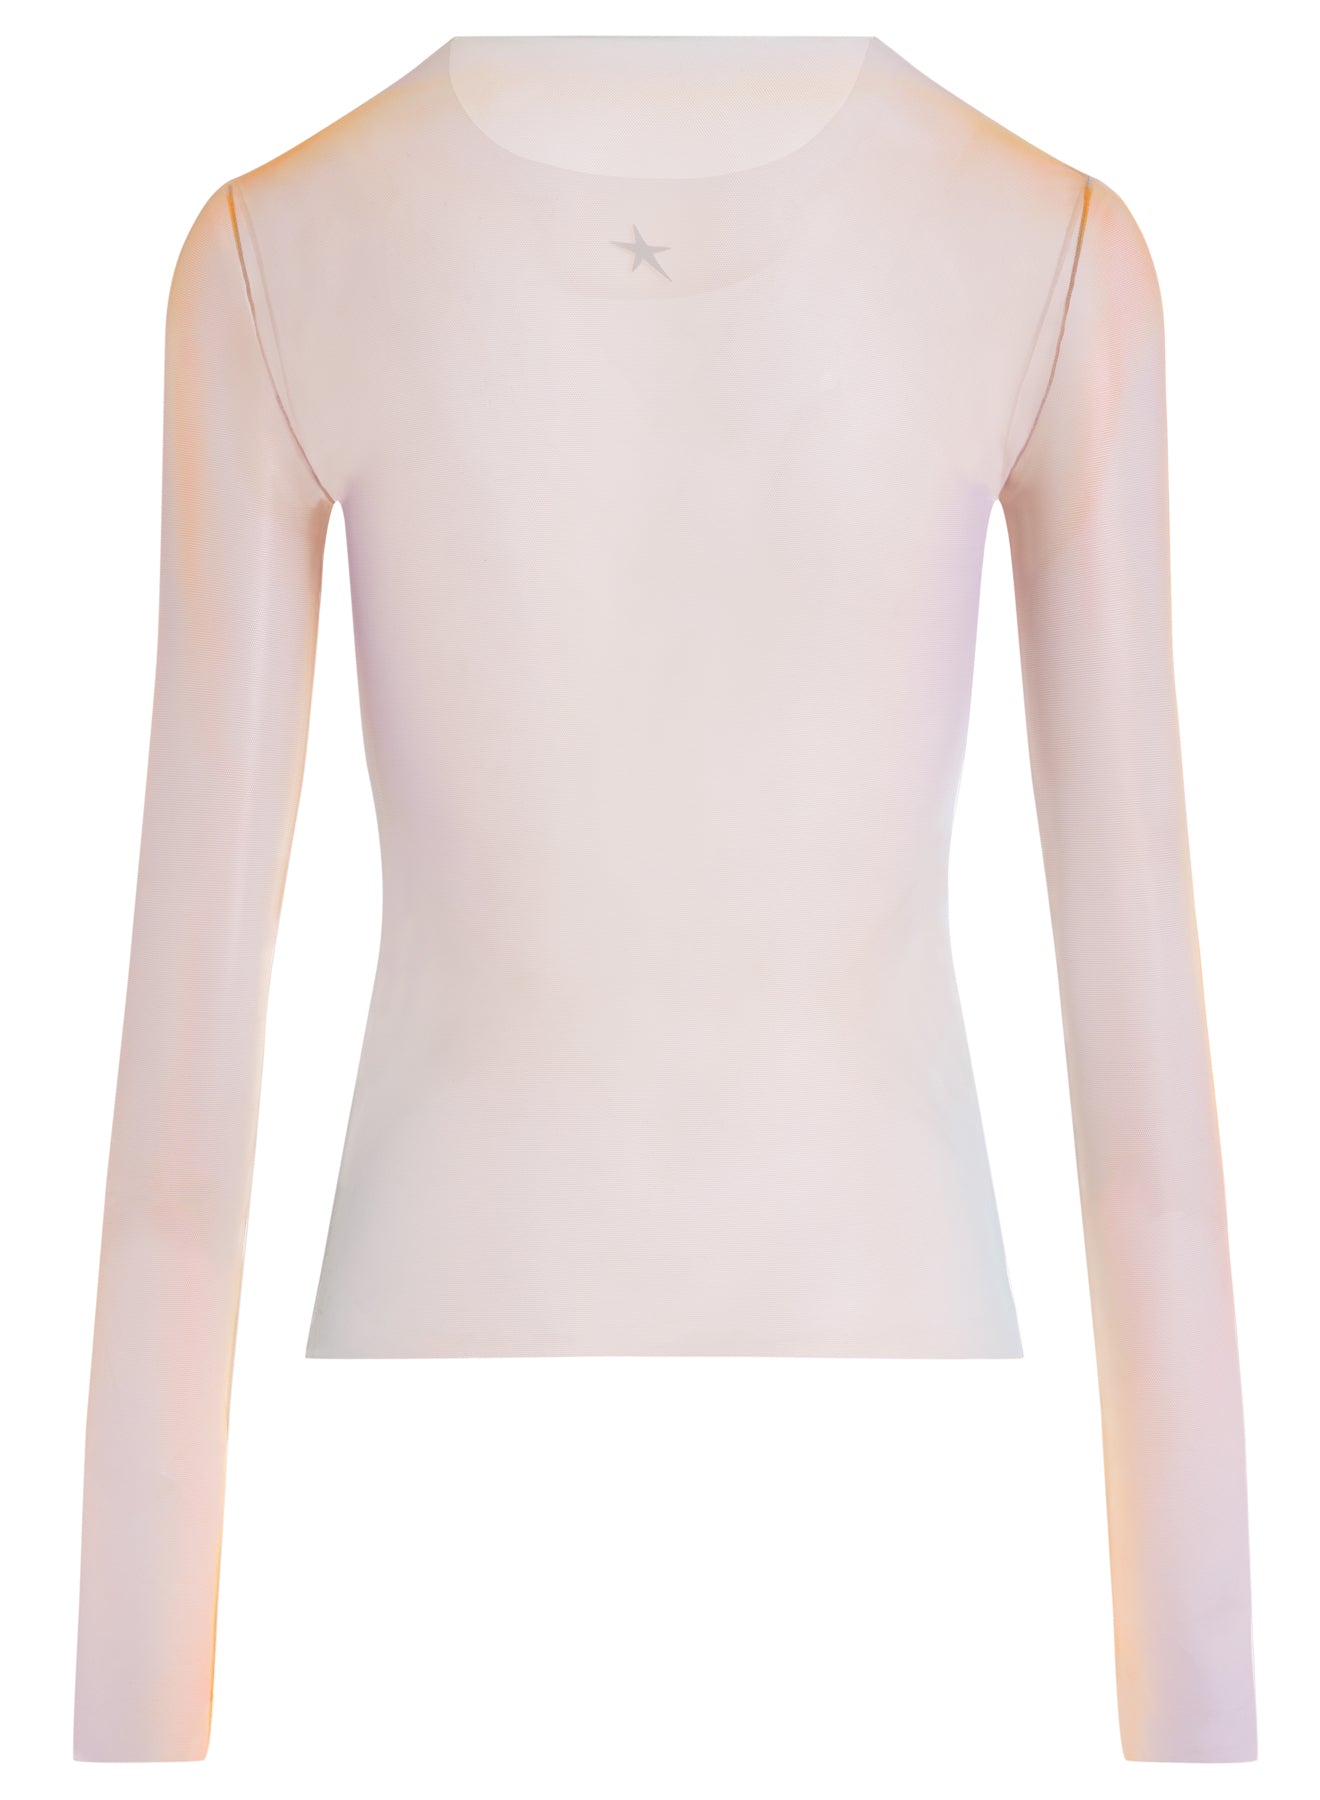 tan gradient-effect long-sleeved top